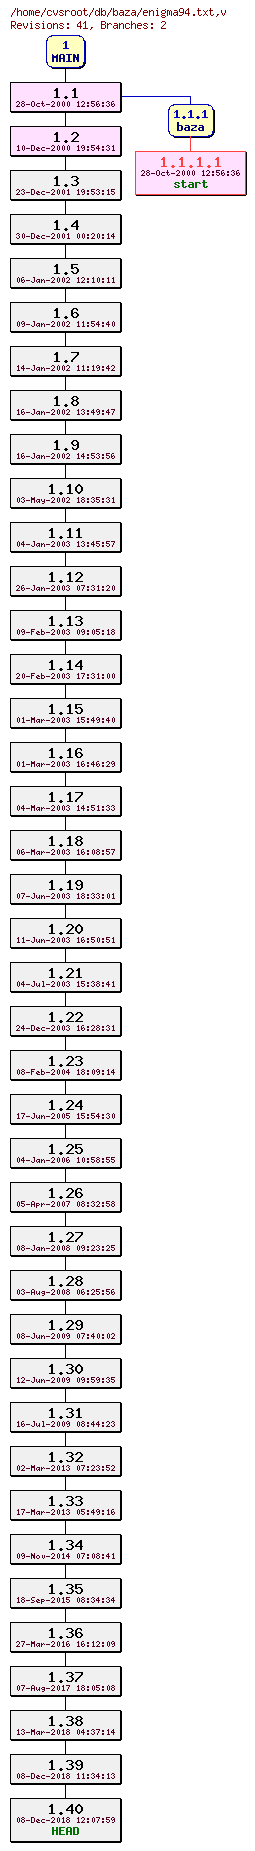 Revision graph of db/baza/enigma94.txt